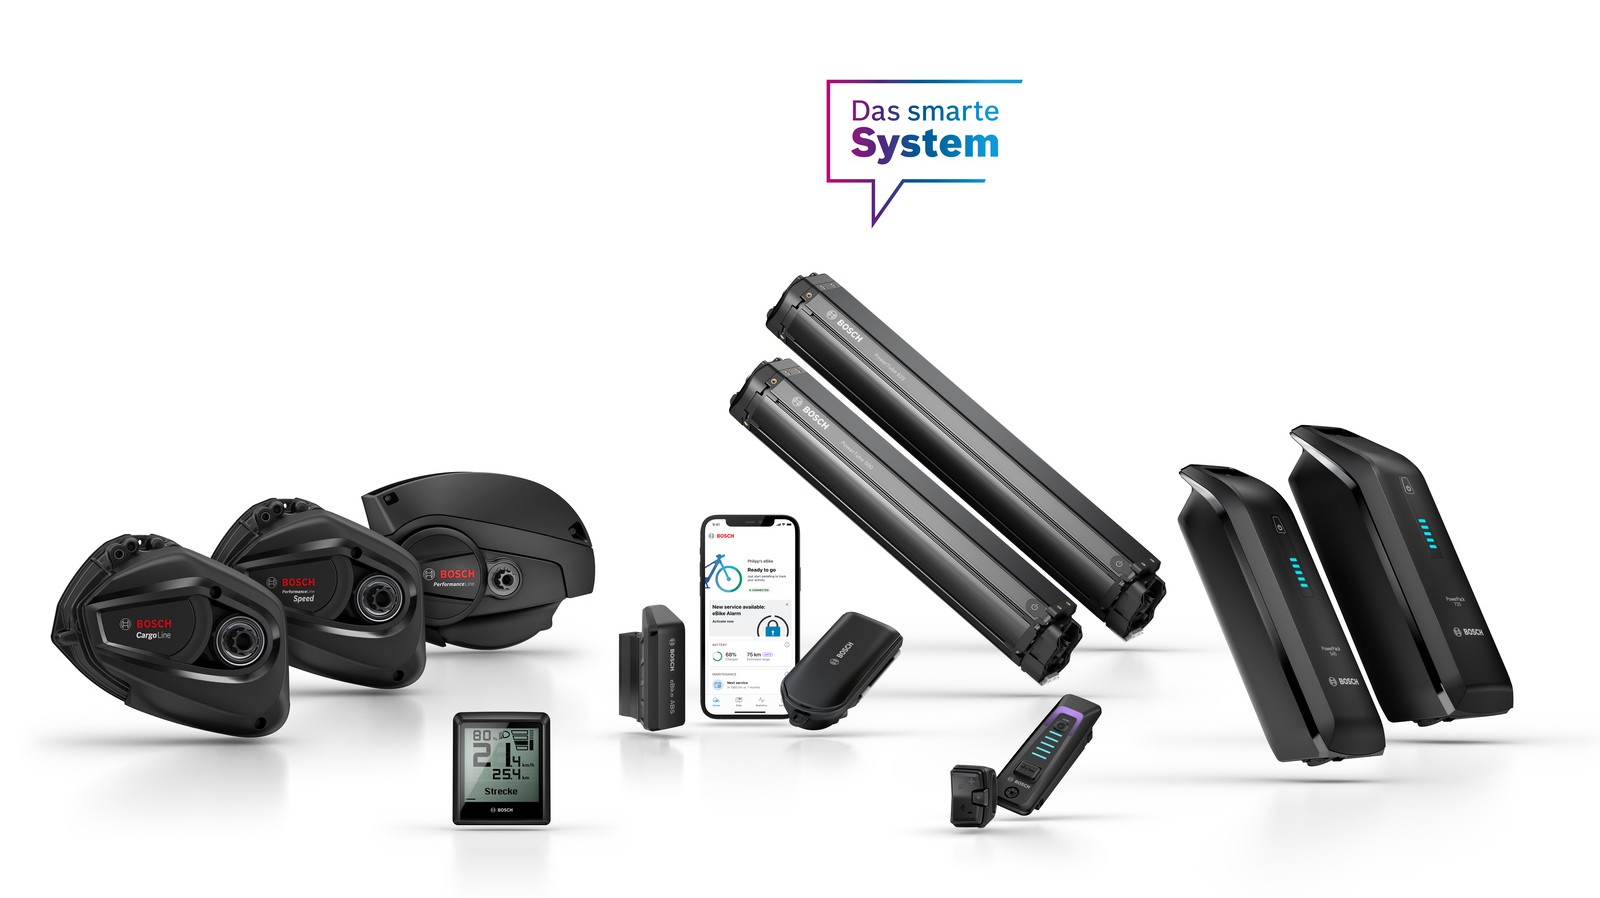 Bosch eBike Systems erweitert im Modelljahr 2023 das Portfolio des smarten Systems um neue Produkte und Features.